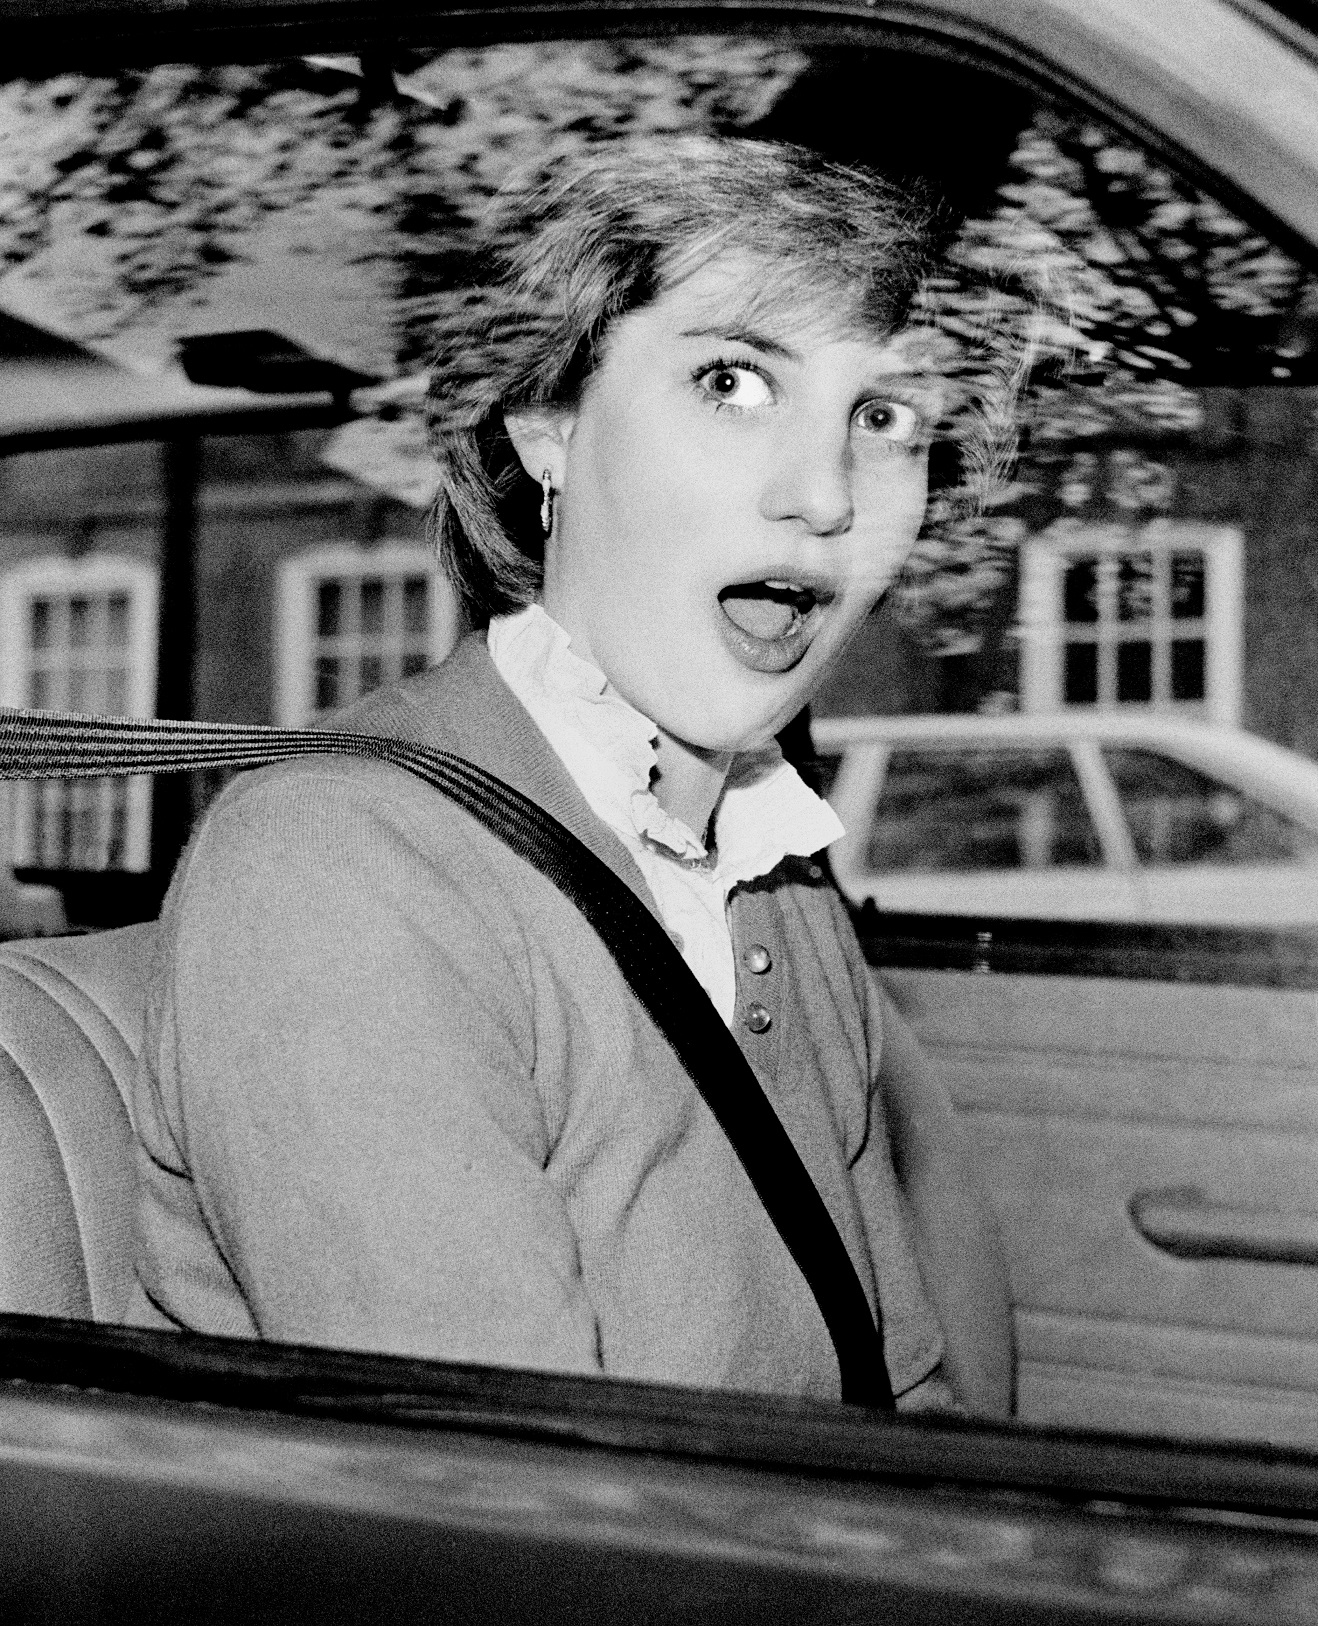 Νοέμβριος 1980, Λονδίνο: Η νεαρή λαίδη Νταϊάνα Σπένσερ ξαφνιάζεται από τους φωτογράφους κατά την ακινητοποίηση του  κόκκινου Mini Metro έξω από το διαμέρισμά της, στο Earls Court του Λονδίνου, λίγες ημέρες πριν ανακοινωθεί ο αρραβώνας της με τον πρίγκιπα Κάρολο. Η αρχή του δημόσιου βίου της είχε μια μακάβρια ομοιότητα με το τέλος του...